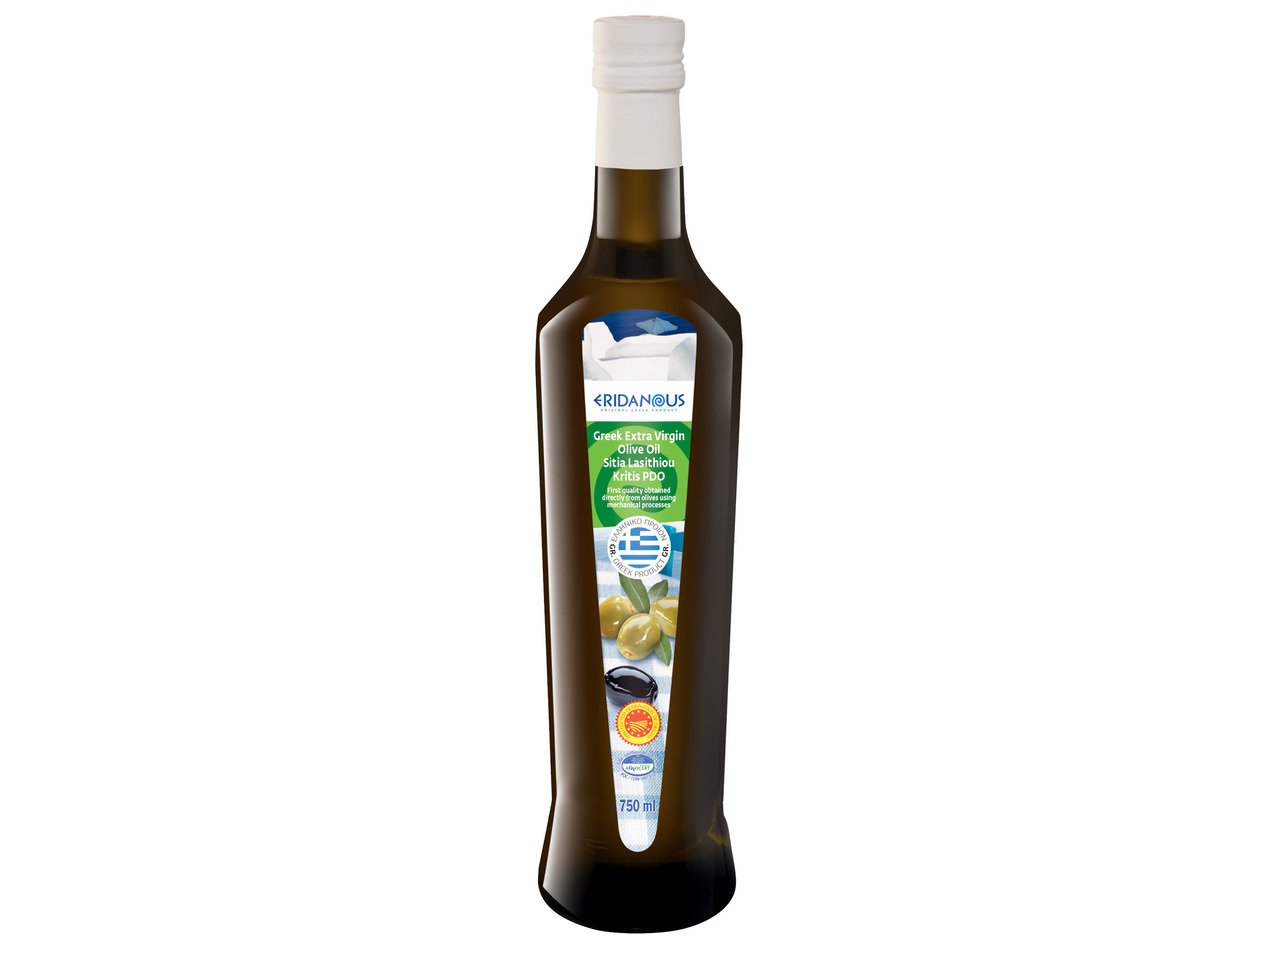 Гръцко маслиново масло екстра върджин